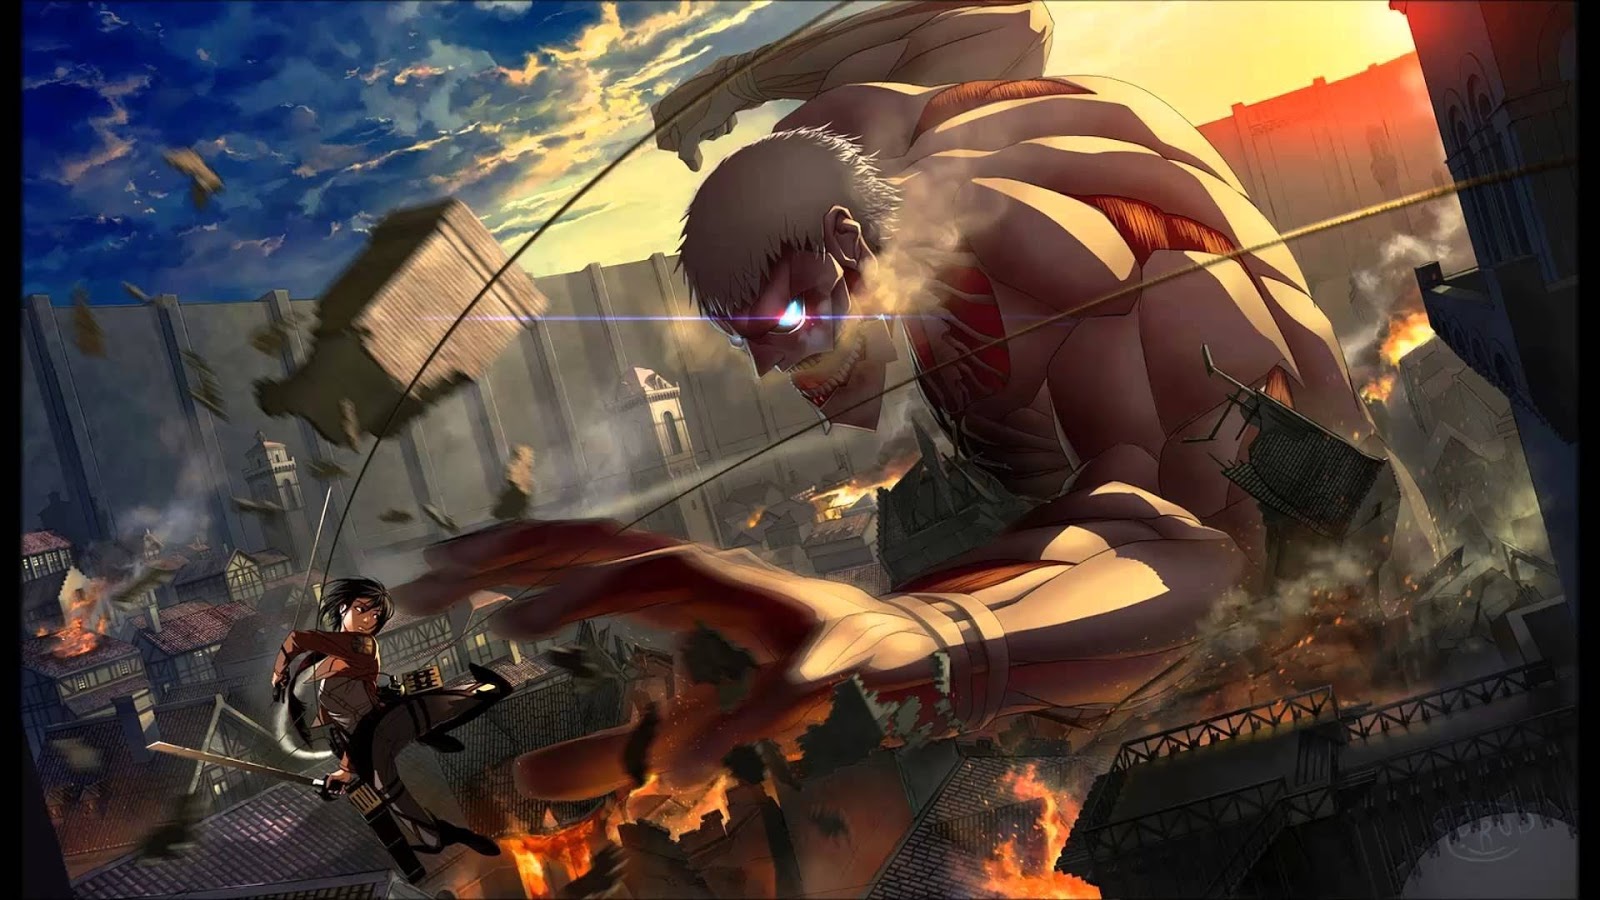 Sejarah Asal Muasal Titan Dalam Anime Attack On Titan Landhiani